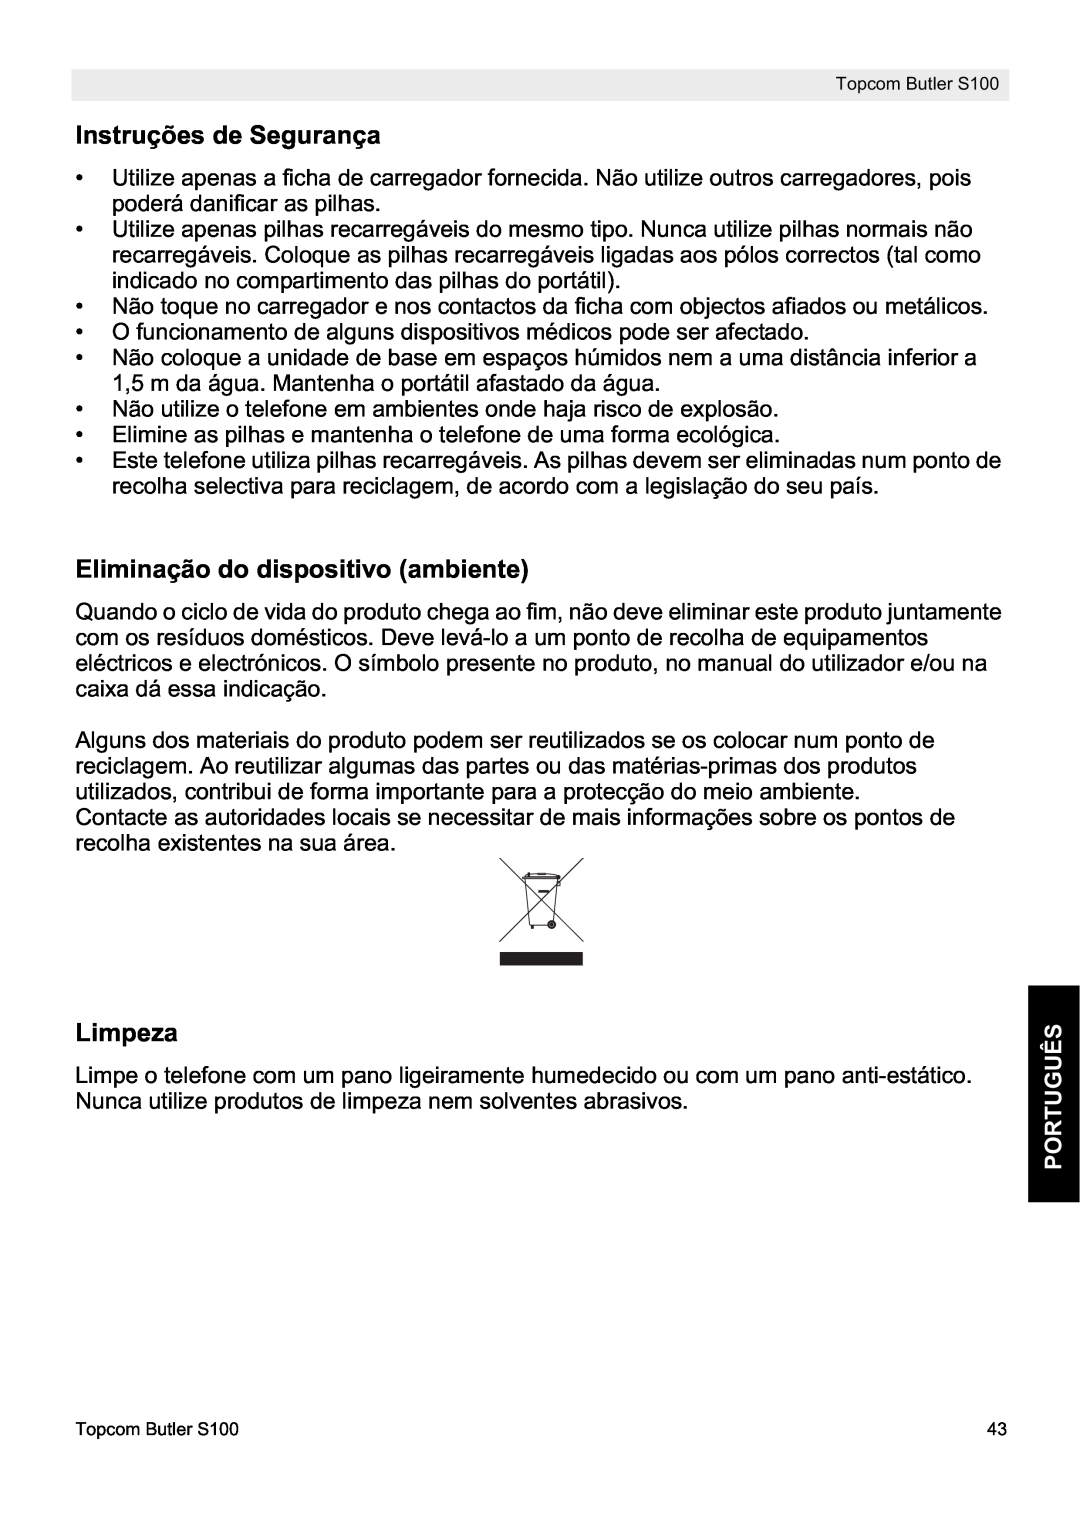 Topcom S100 manual do utilizador Instruções de Segurança, Eliminação do dispositivo ambiente, Limpeza, Português 